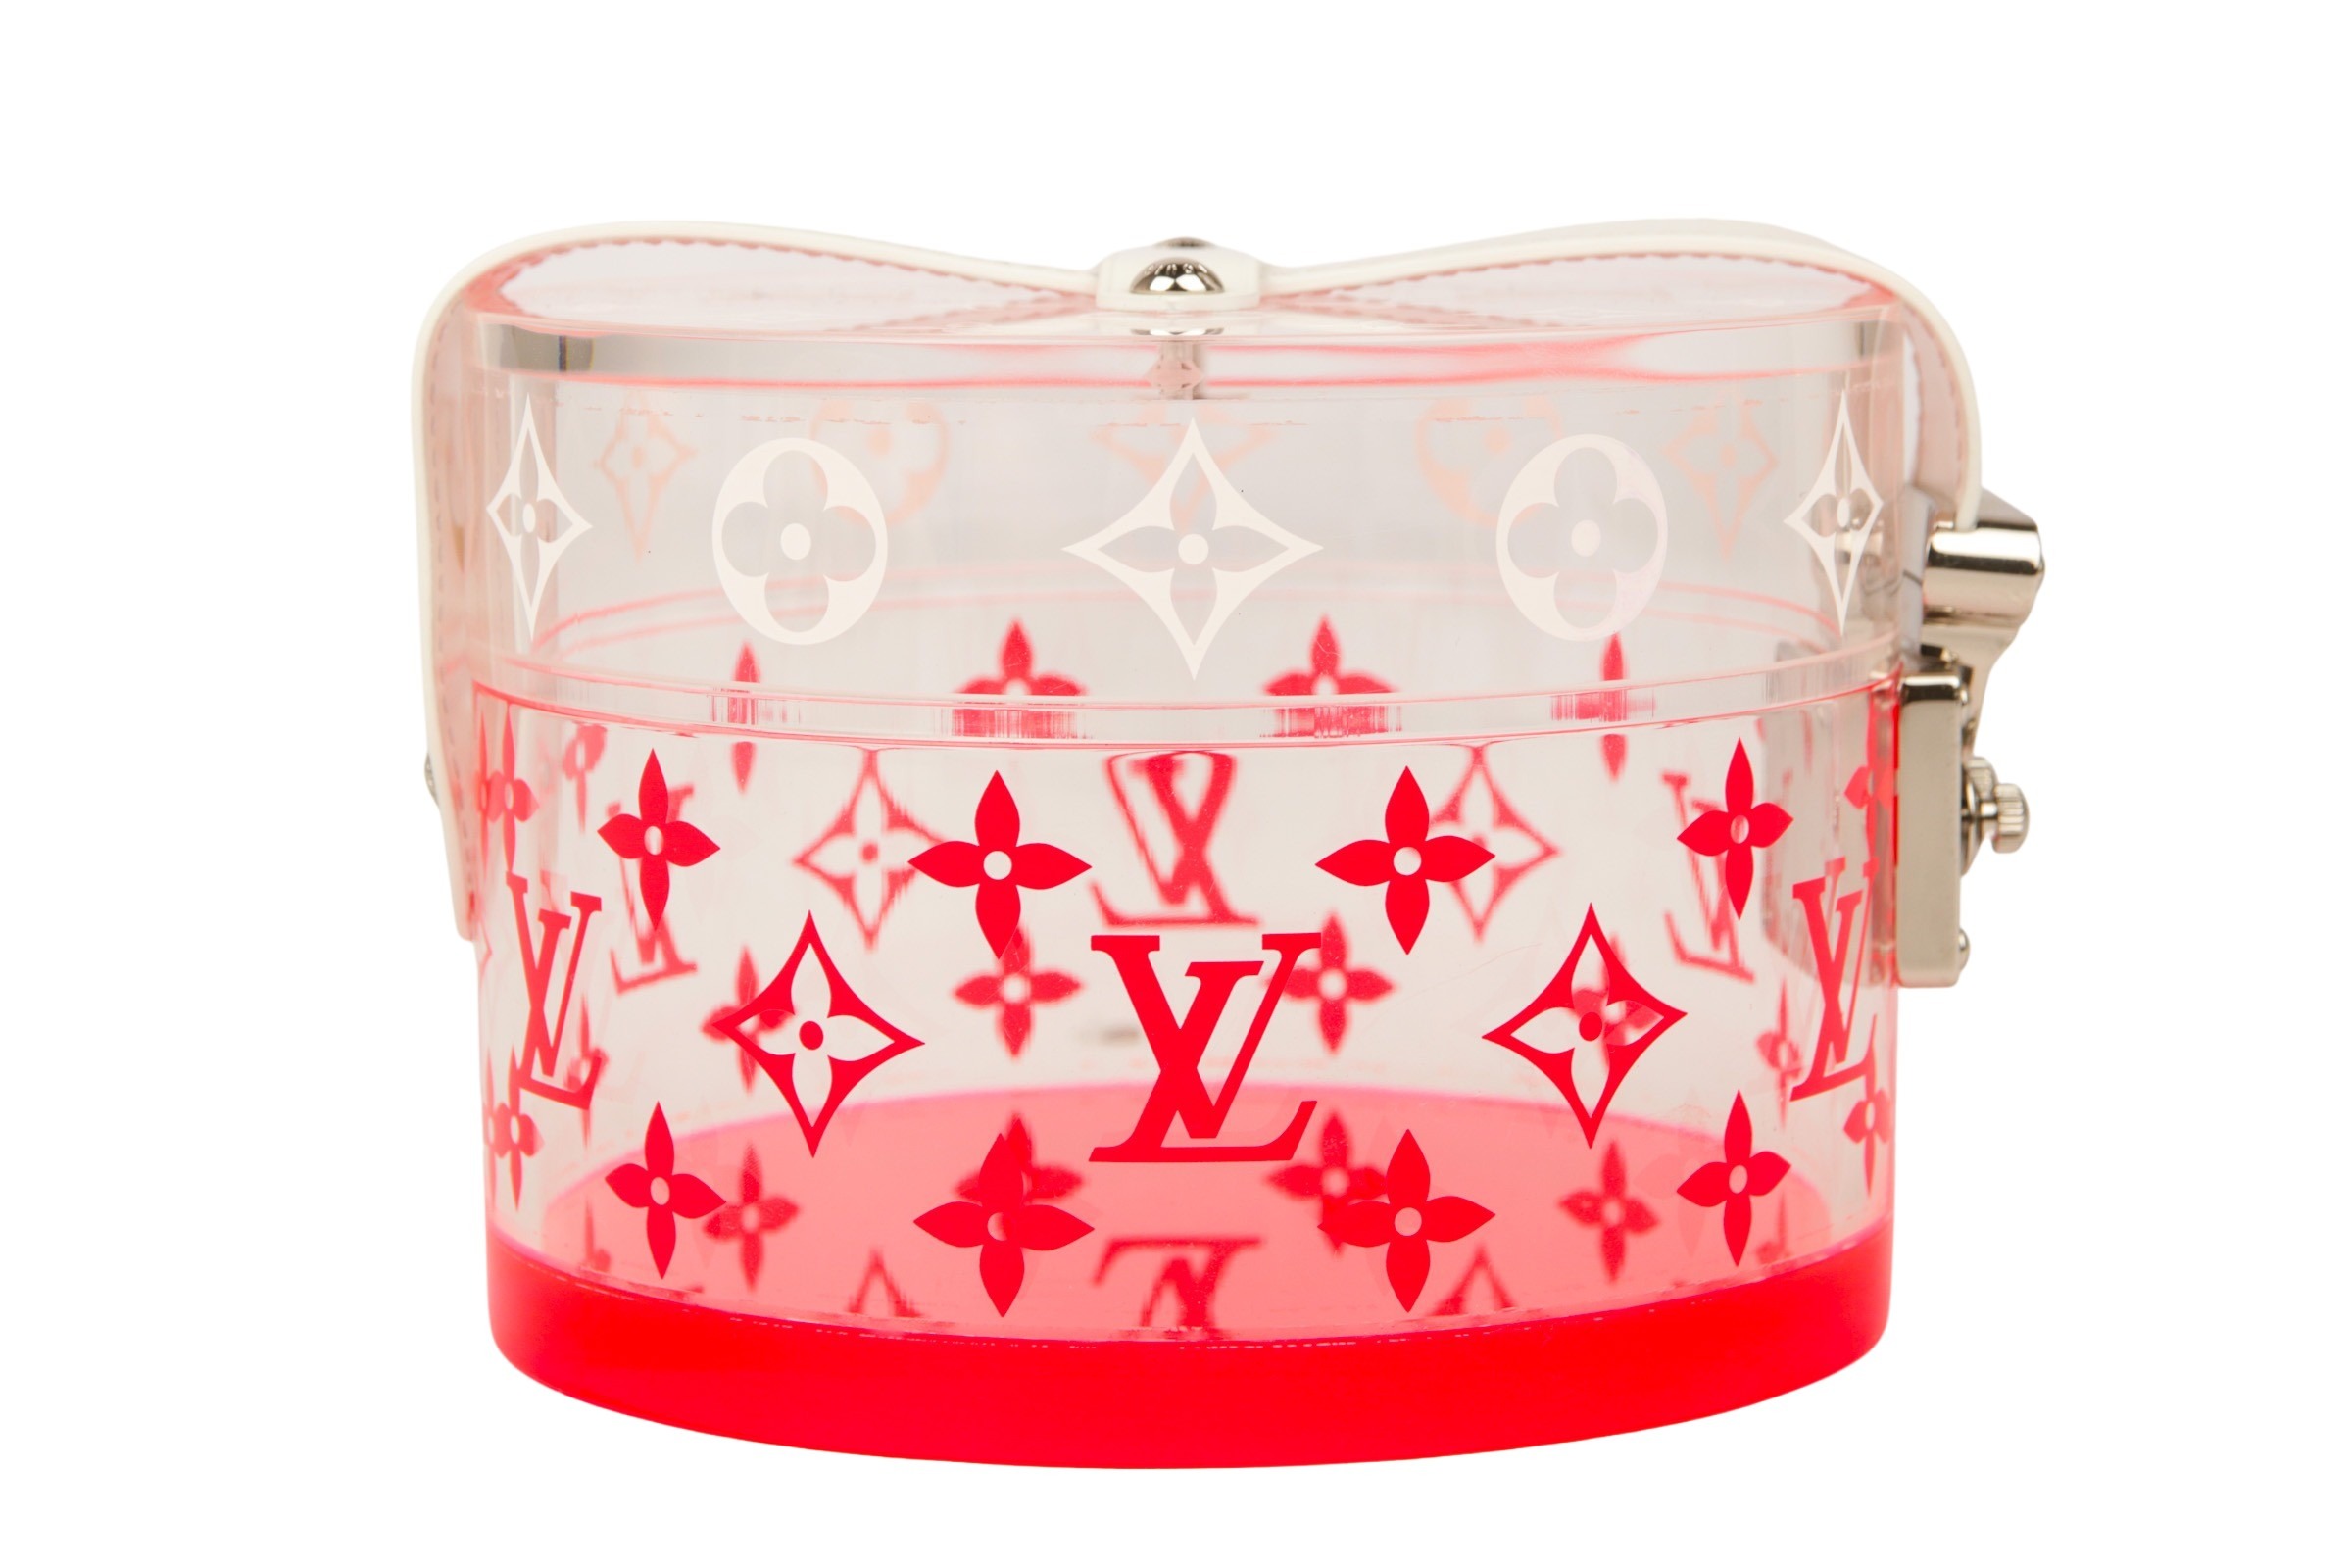 Louis Vuitton Scott Box Transparent Limited Edition